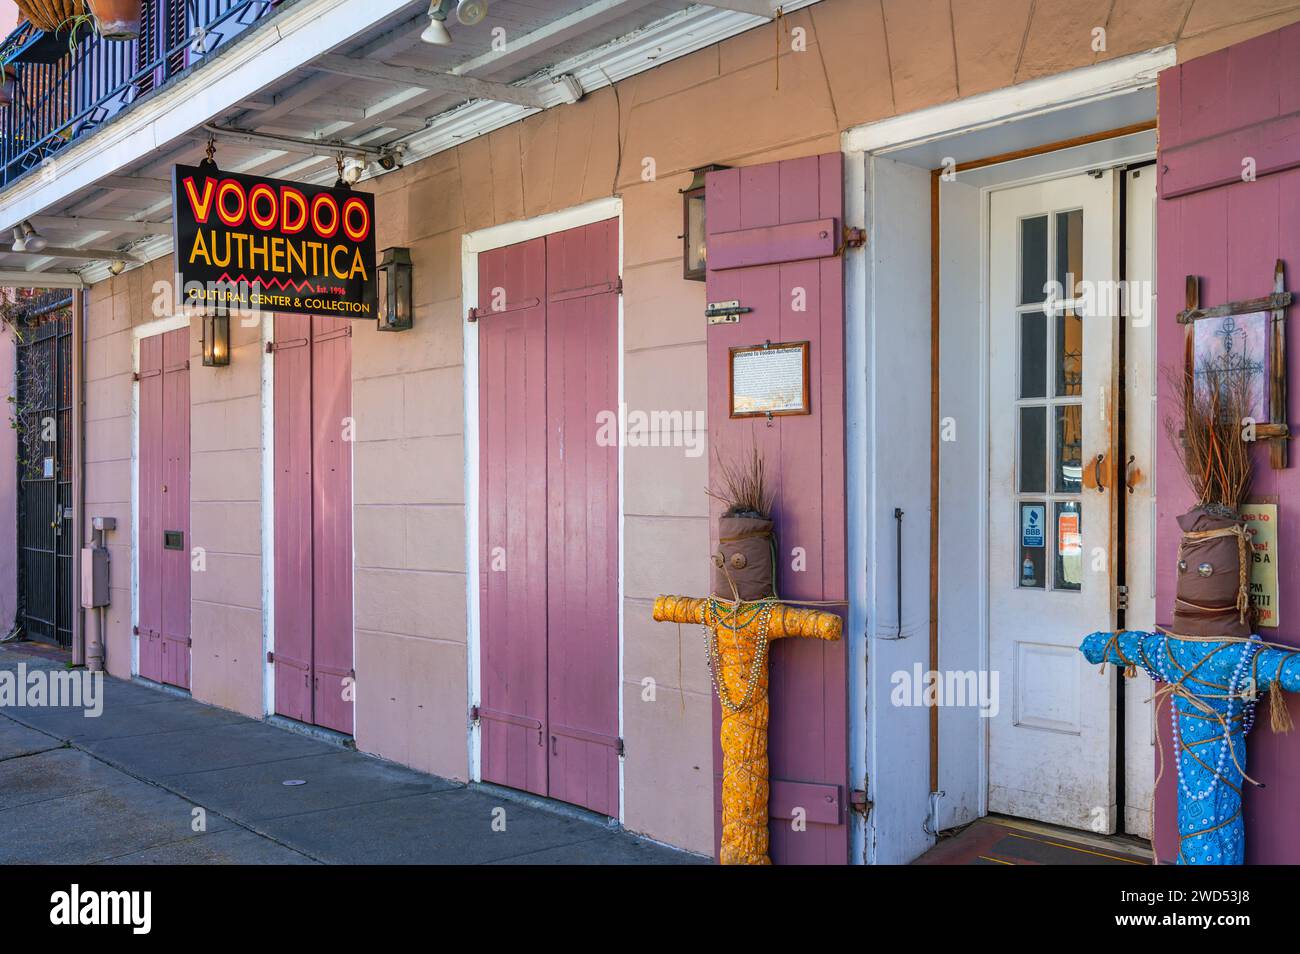 Das Voodoo Authentica Cultural Center and Collection ist ein Voodoo-Shop im historischen French Quarter in New Orleans, Louisiana. Stockfoto